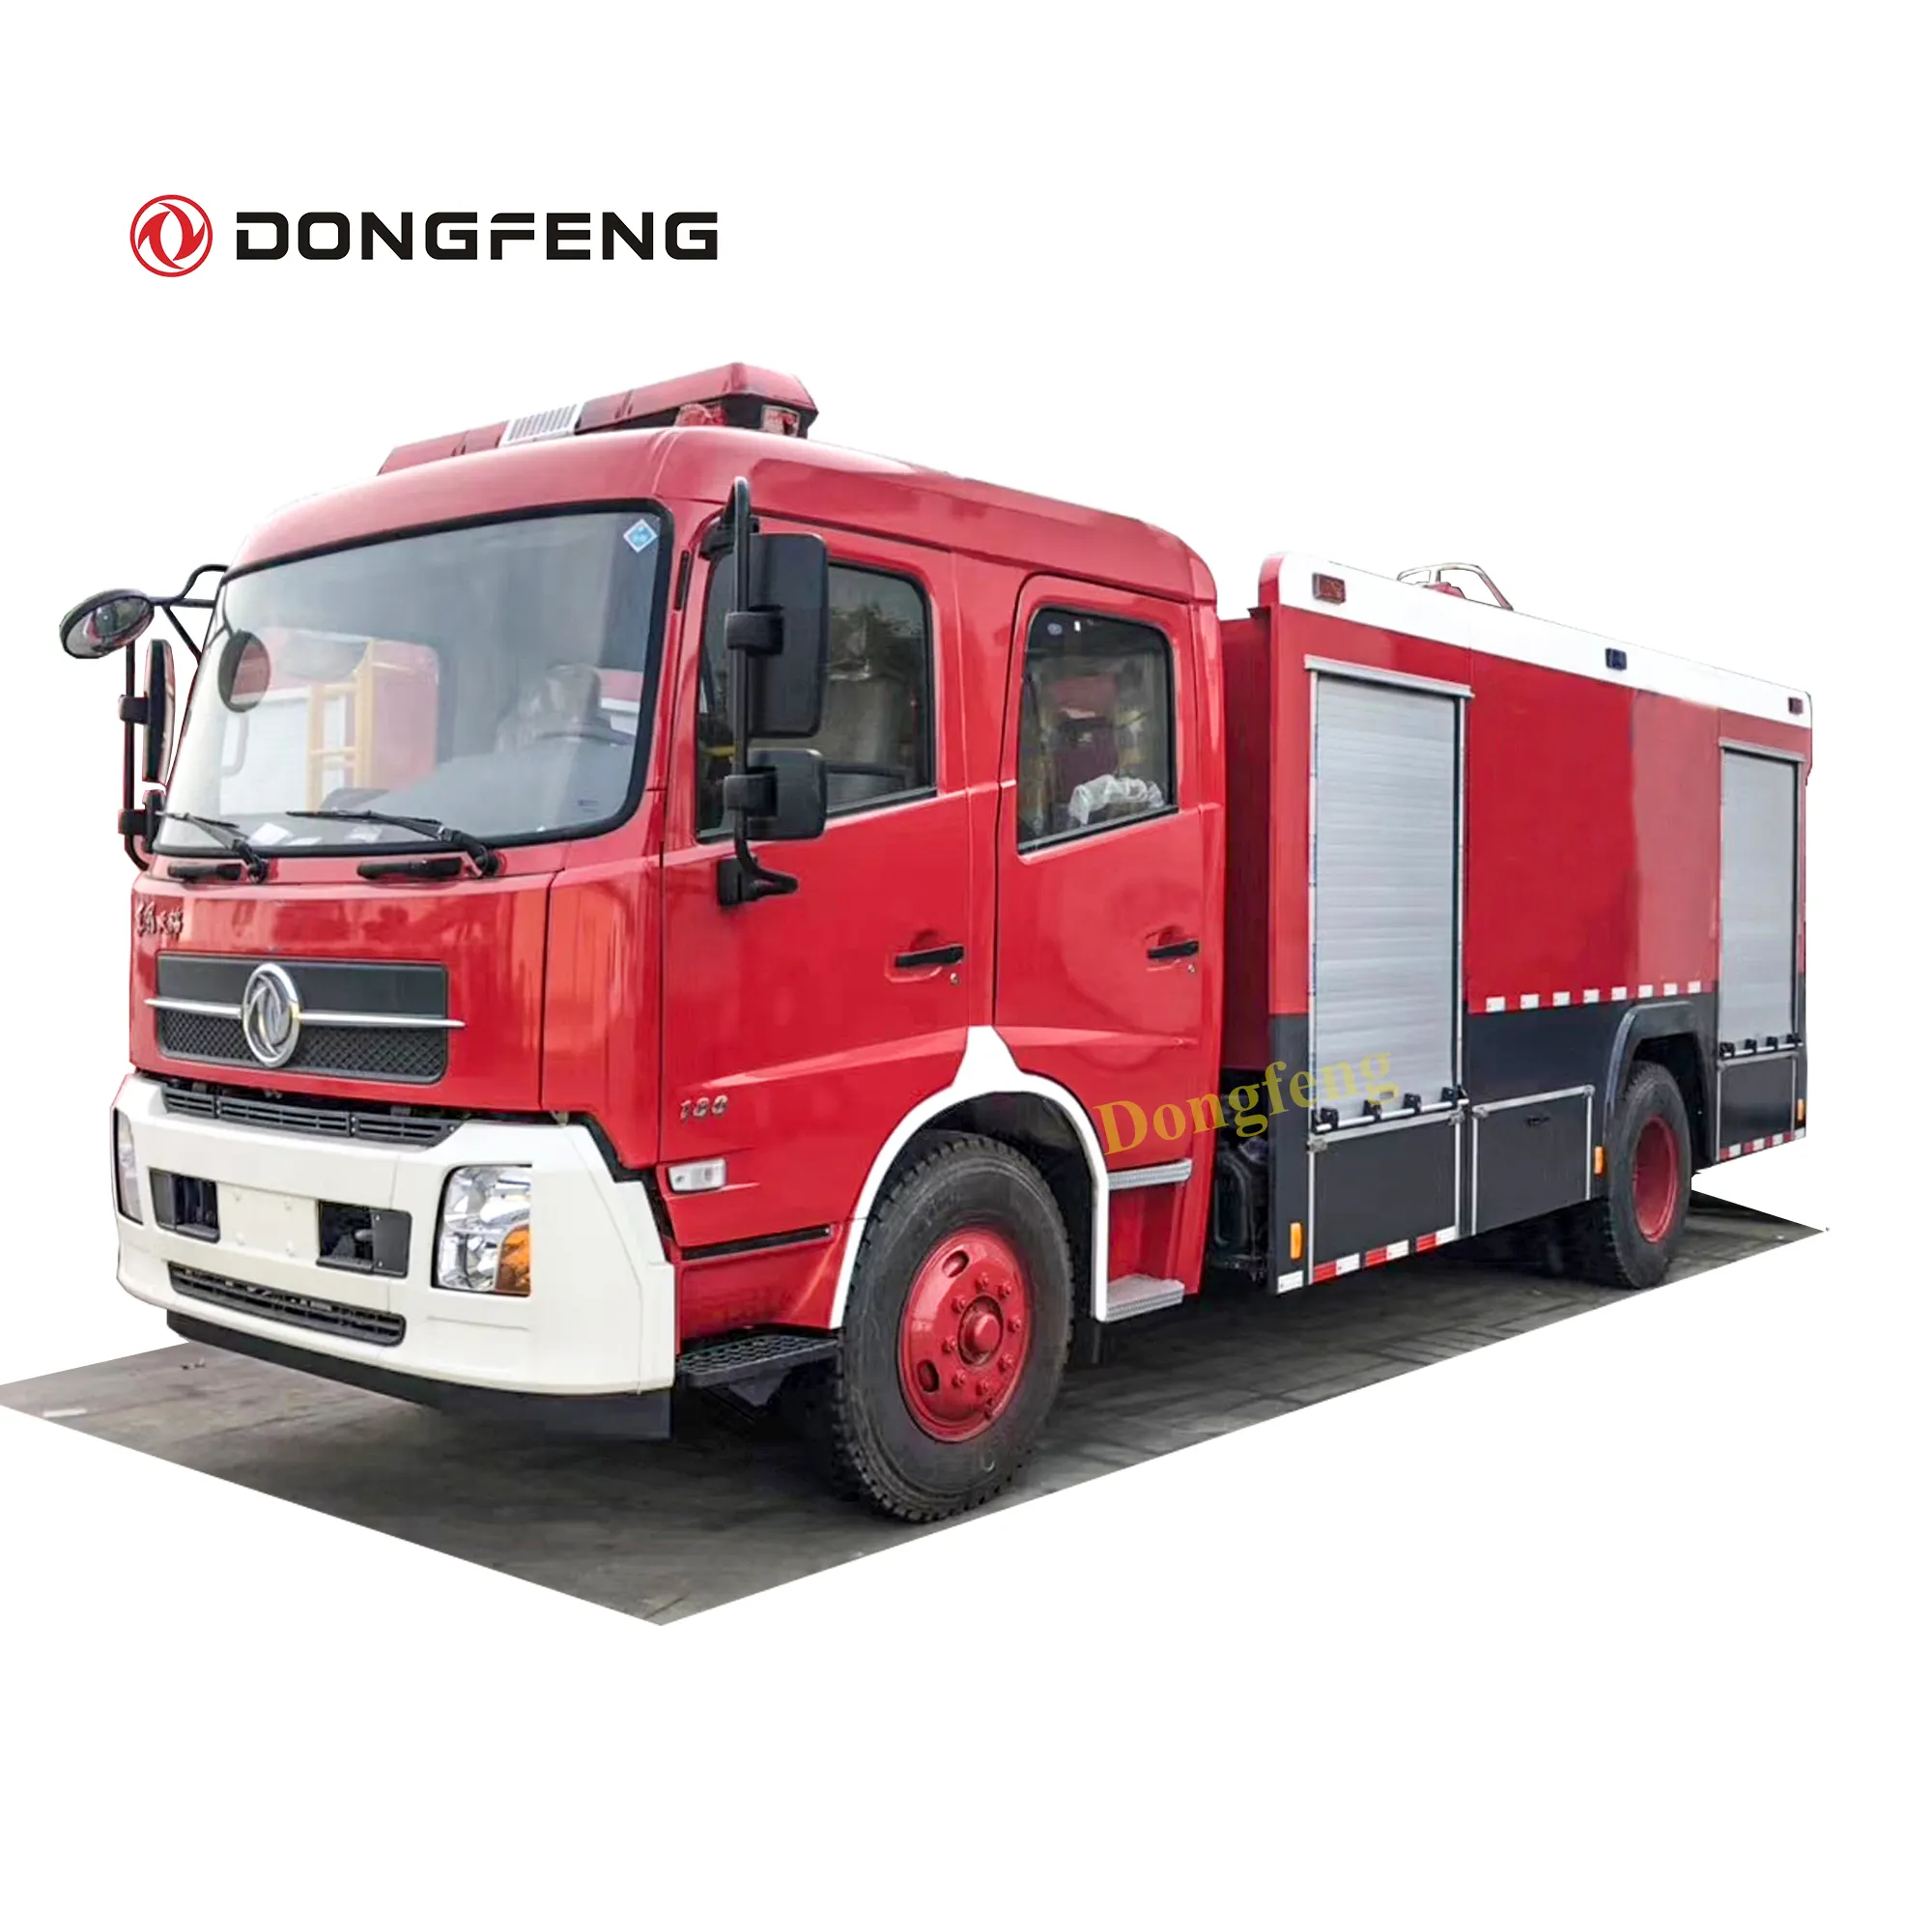 Motor de fogo da china 8000 litros tanque de água com 2000 litros tipo caminhão de combate a incêndio